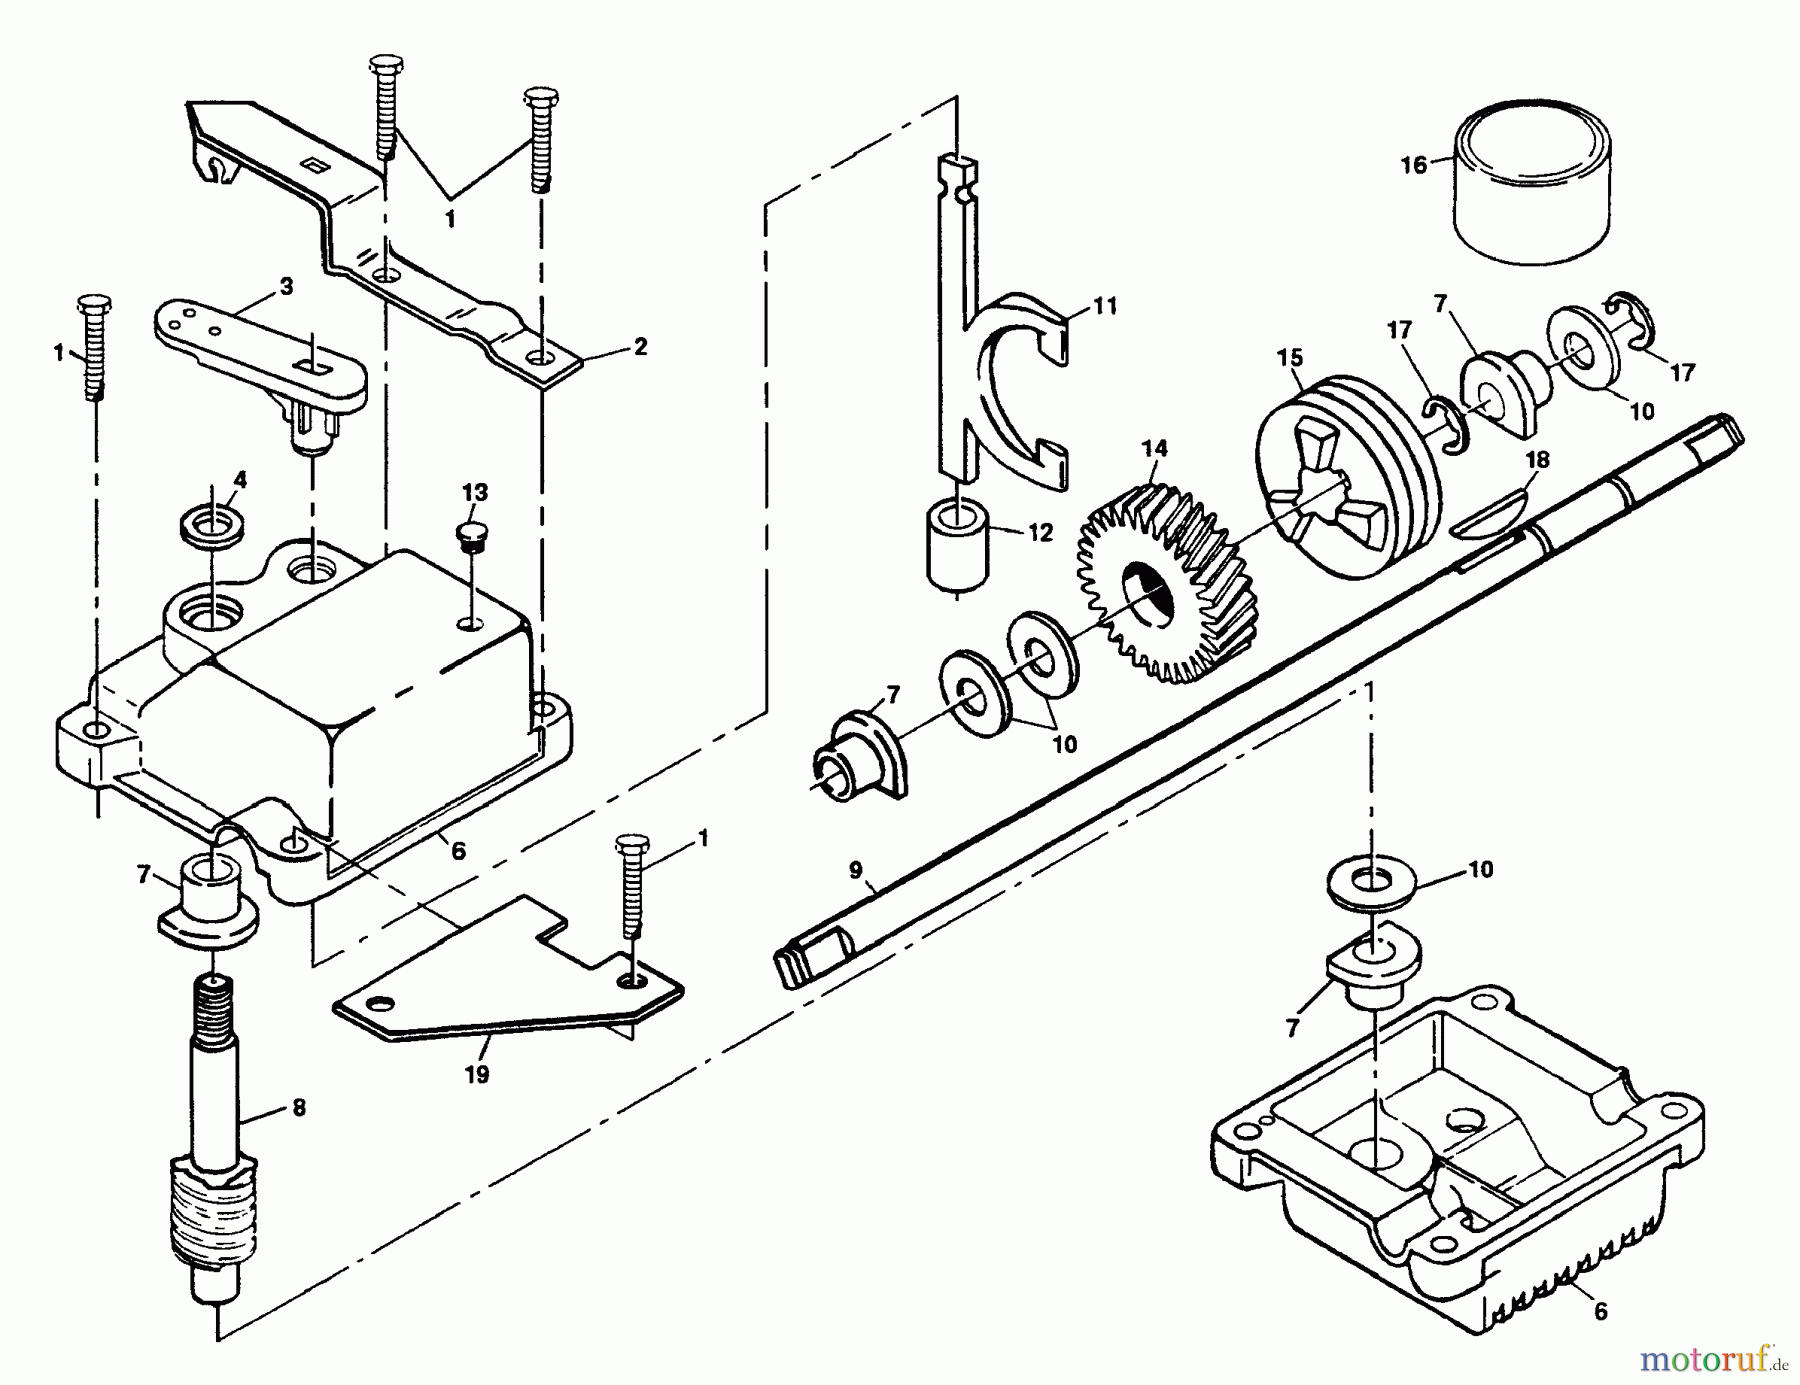  Husqvarna Rasenmäher H56 SFEF (954072401) - Husqvarna Walk-Behind Mower (1995-03 & After) Gear Case Assembly